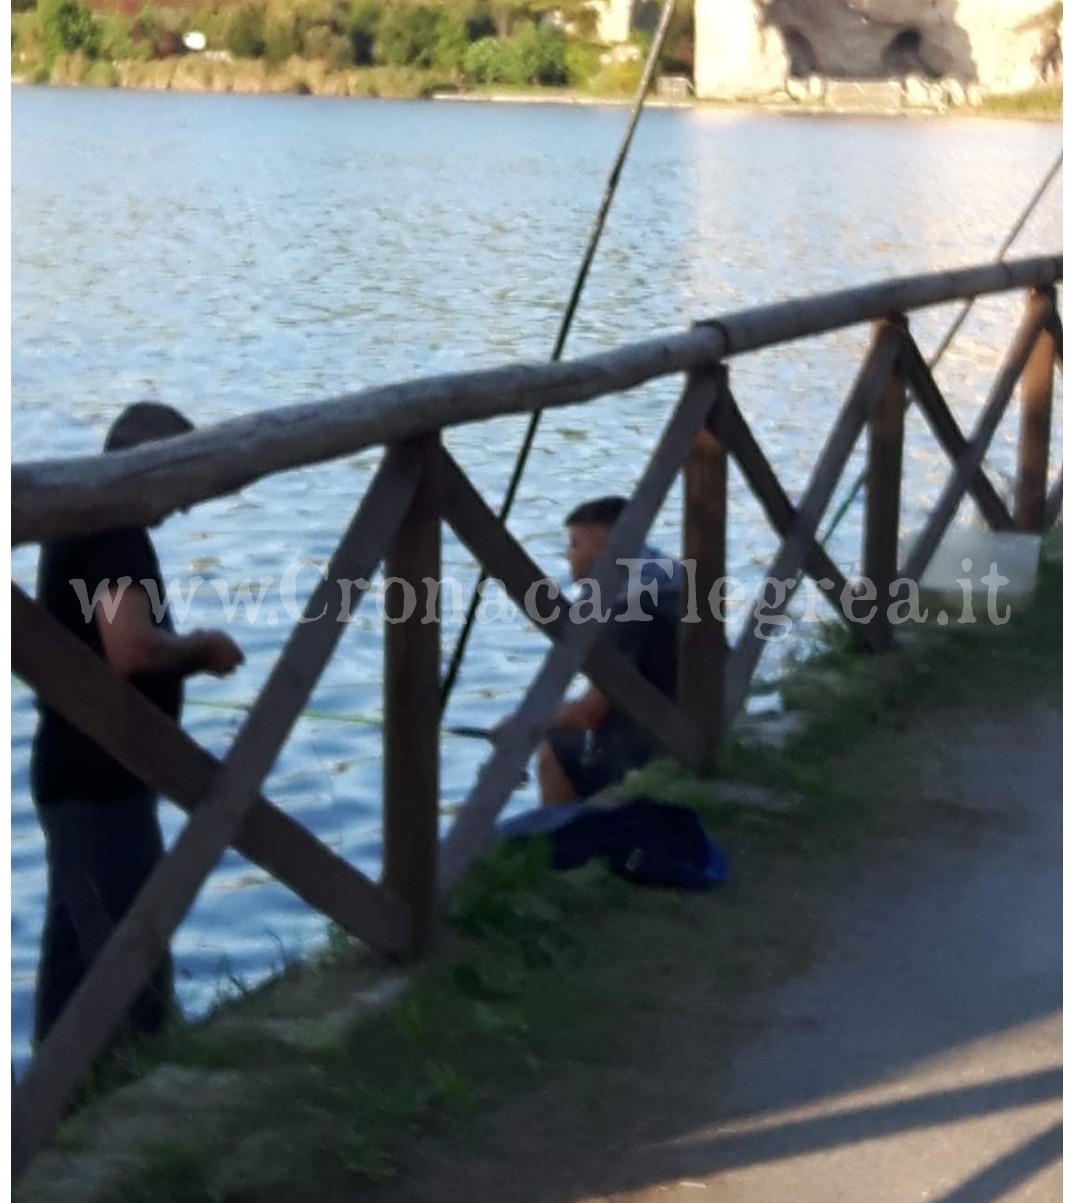 FOTONOTIZIA/ Nonostante il divieto nel Lago d’Averno si continua a pescare